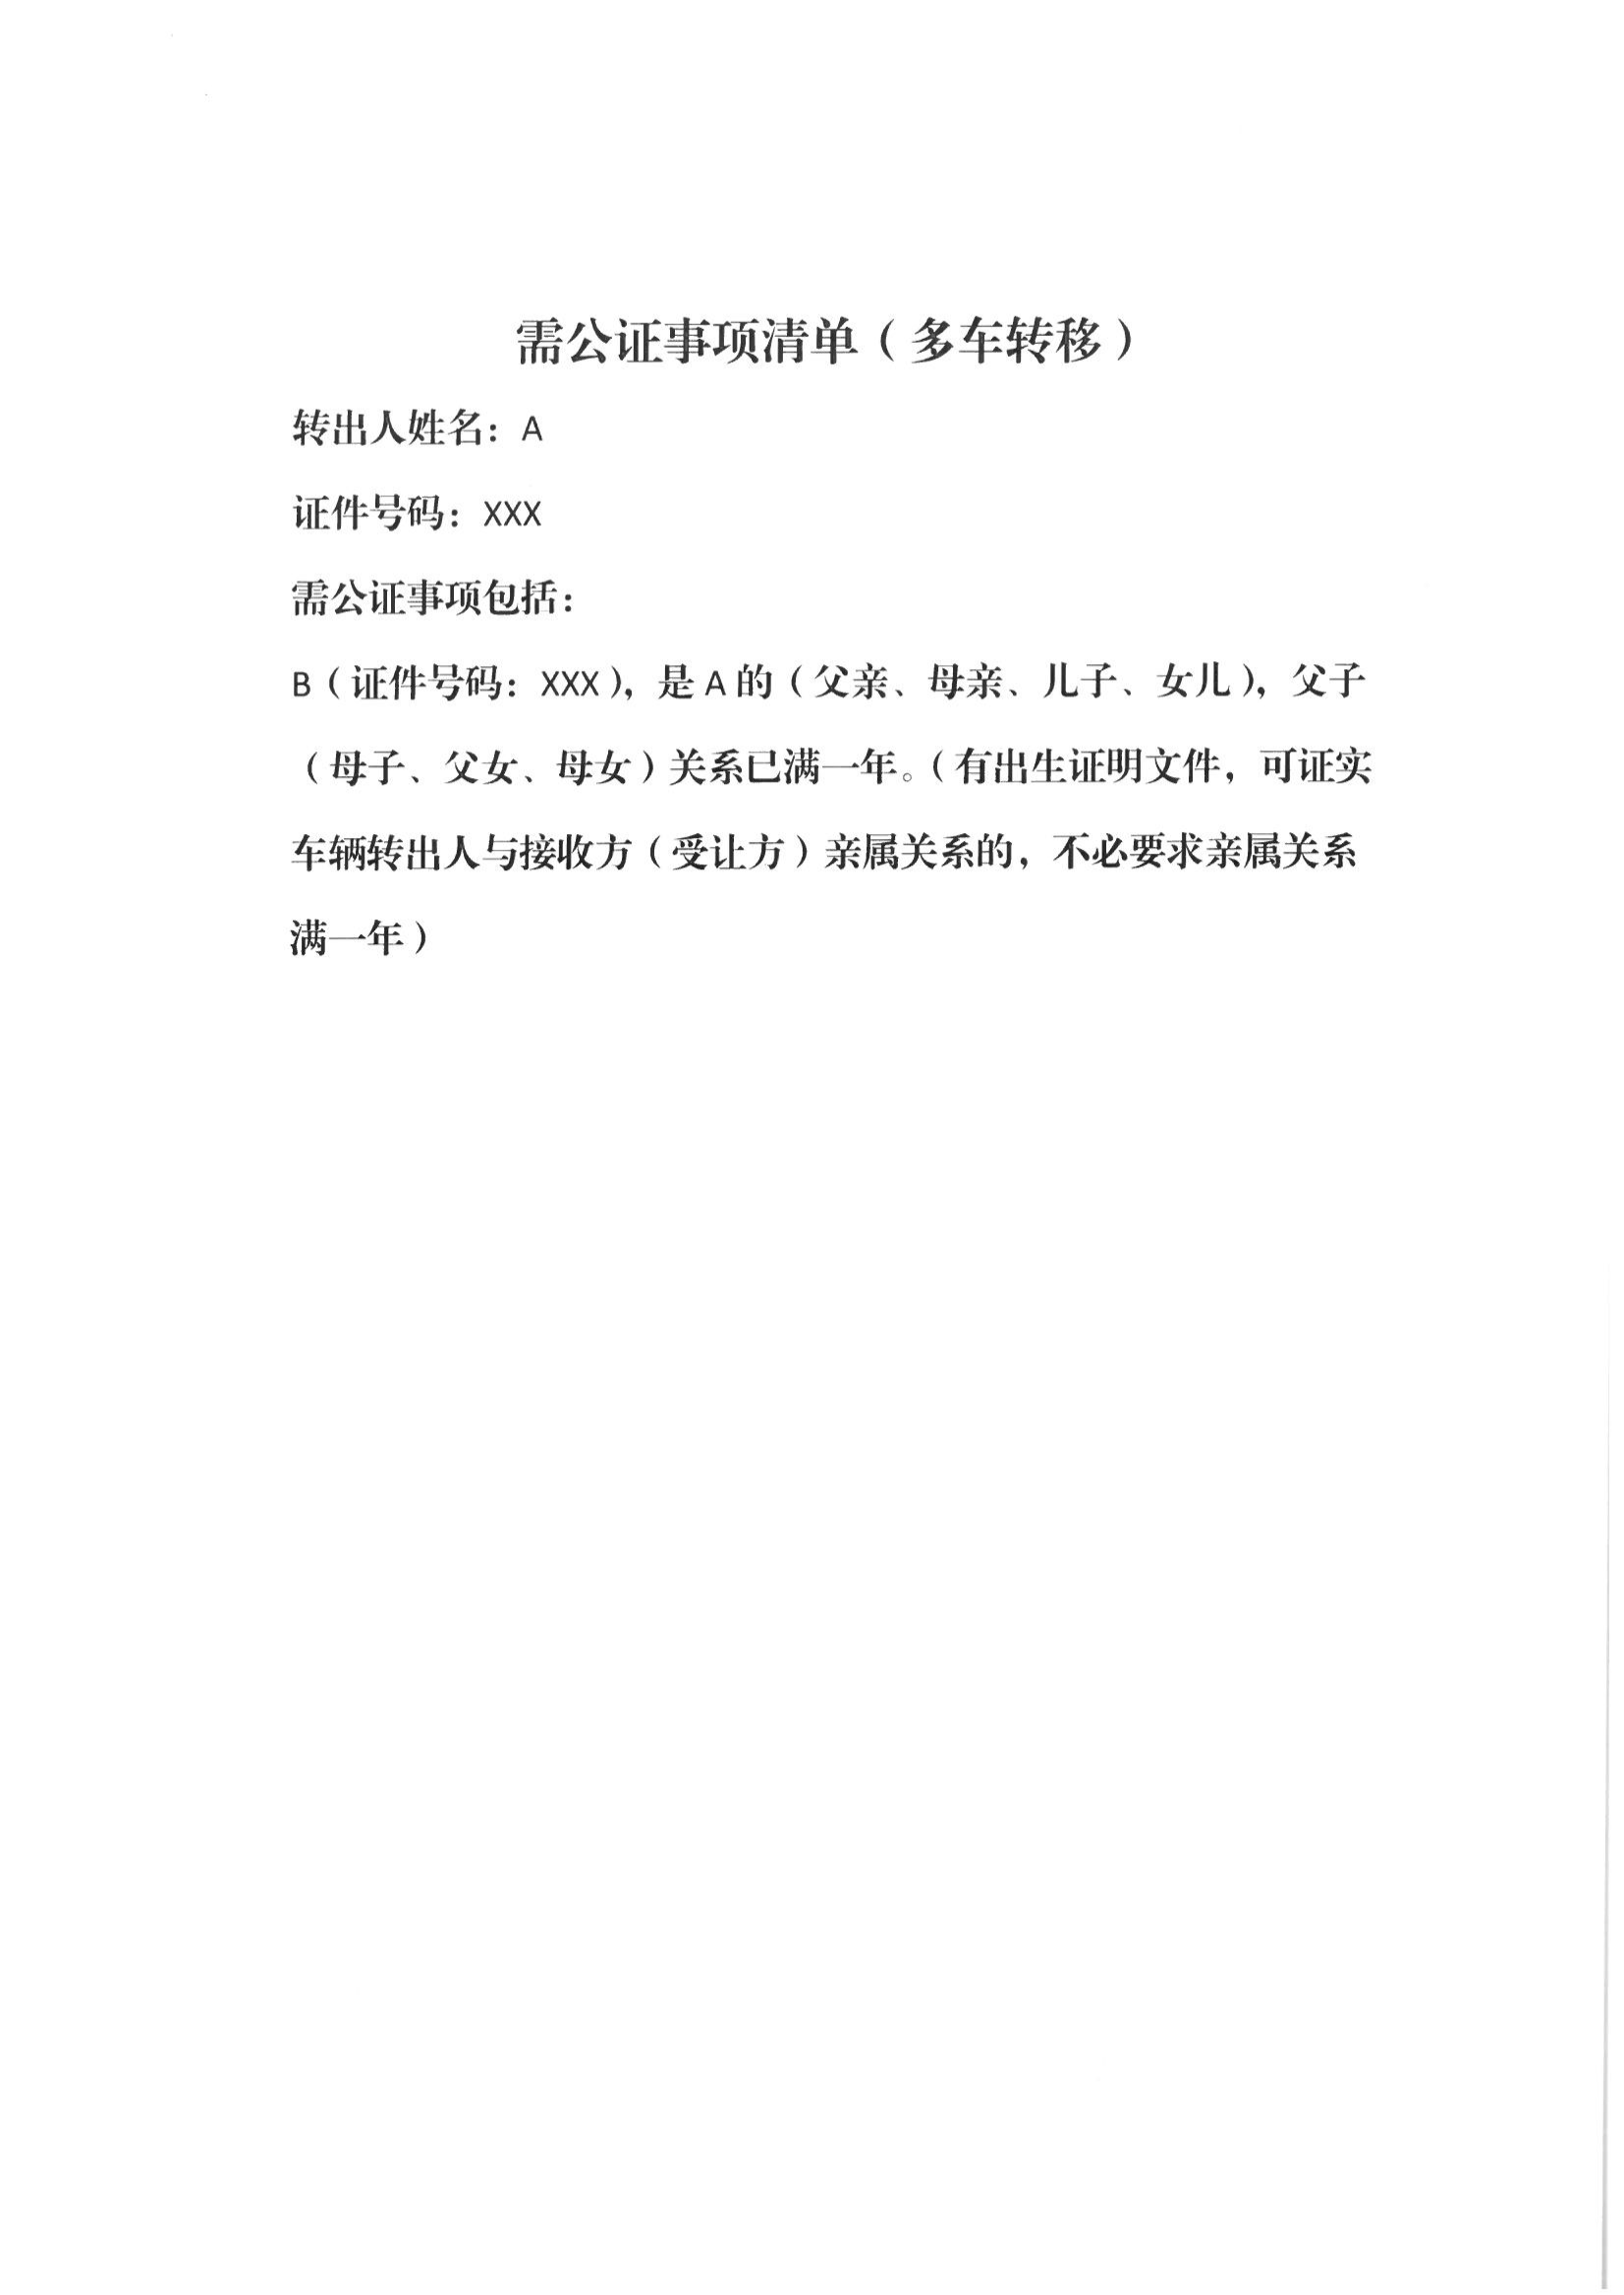 13、北京市公证协会关于印发《北京市公证协会规范执业指引》第13号的通知_49